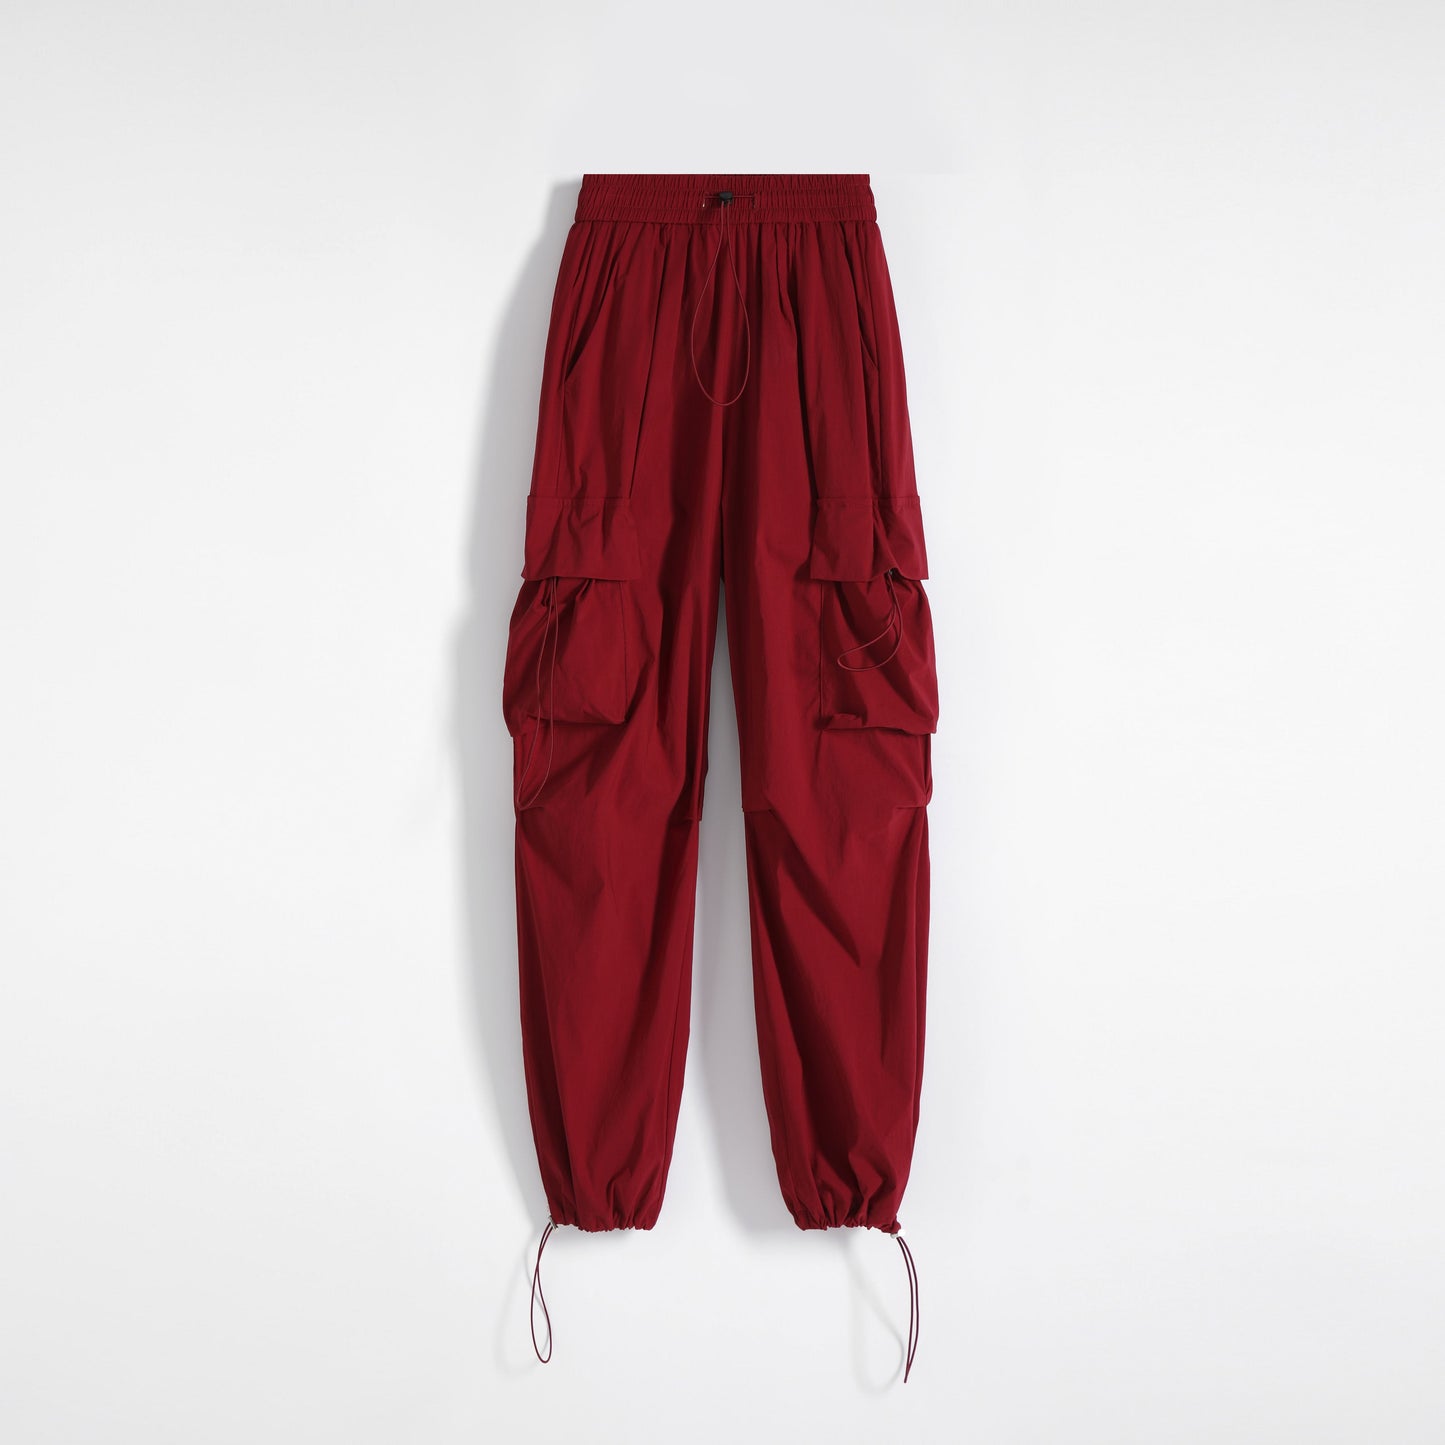 Pantalon cargo polyvalent à taille haute, mince, solide et à séchage rapide.